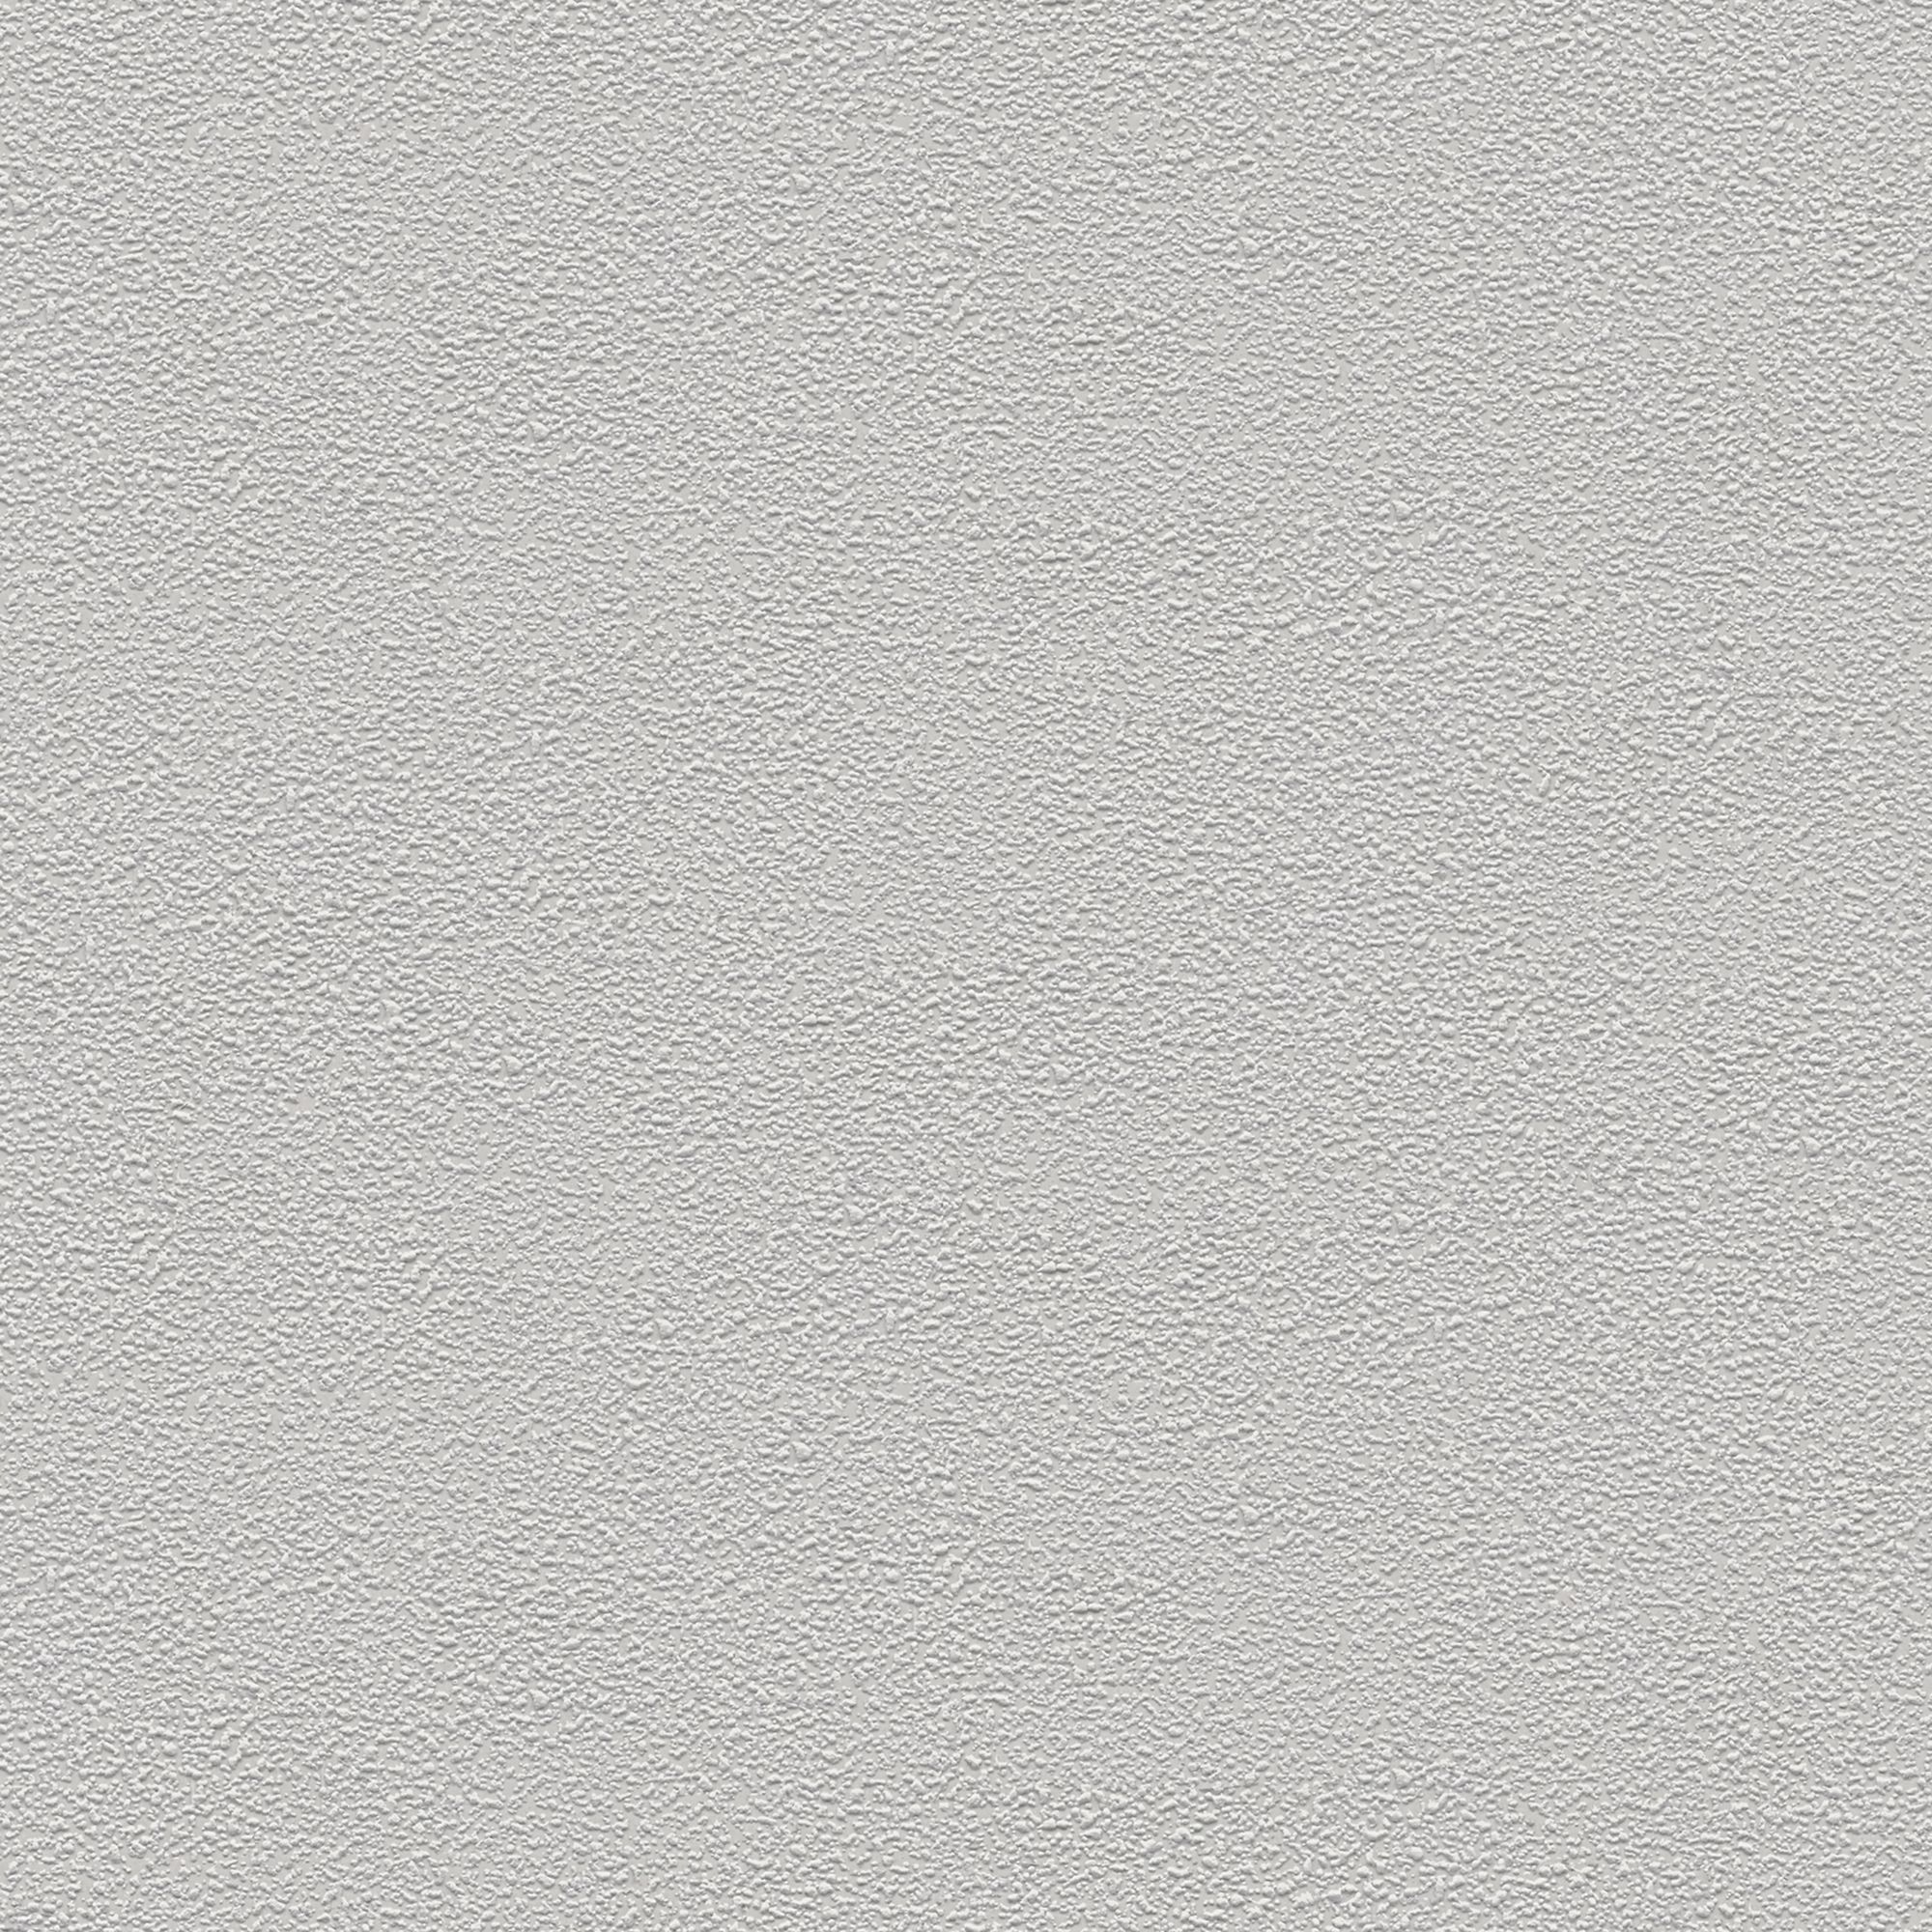 Vauquois Light grey Plaster effect Textured Wallpaper